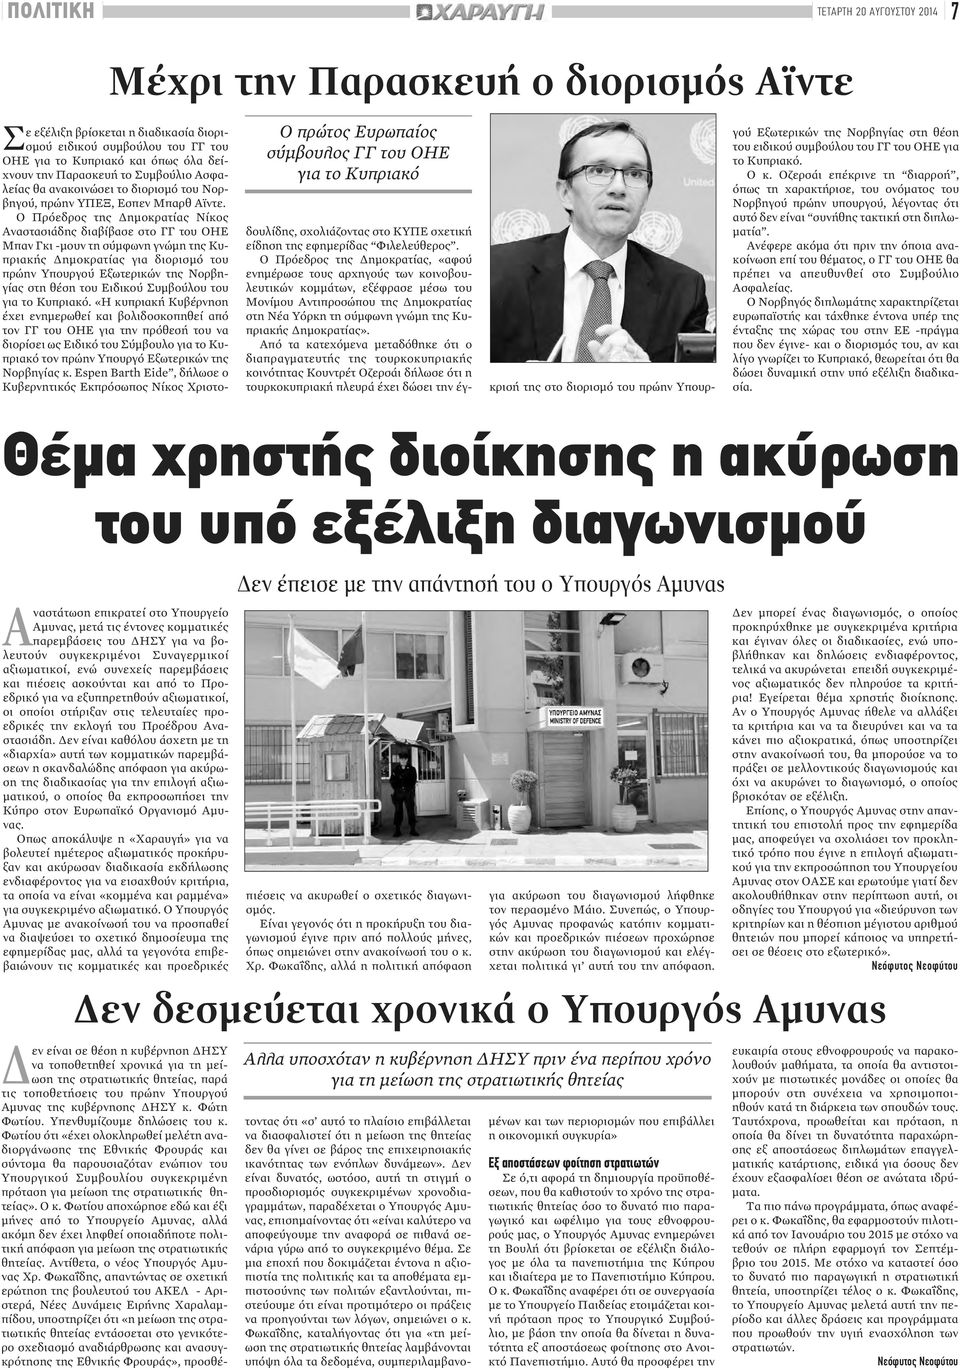 Ο Πρόεδρος της Δημοκρατίας Νίκος Αναστασιάδης διαβίβασε στο ΓΓ του ΟΗΕ Μπαν Γκι -μουν τη σύμφωνη γνώμη της Κυπριακής Δημοκρατίας για διορισμό του πρώην Υπουργού Εξωτερικών της Νορβηγίας στη θέση του